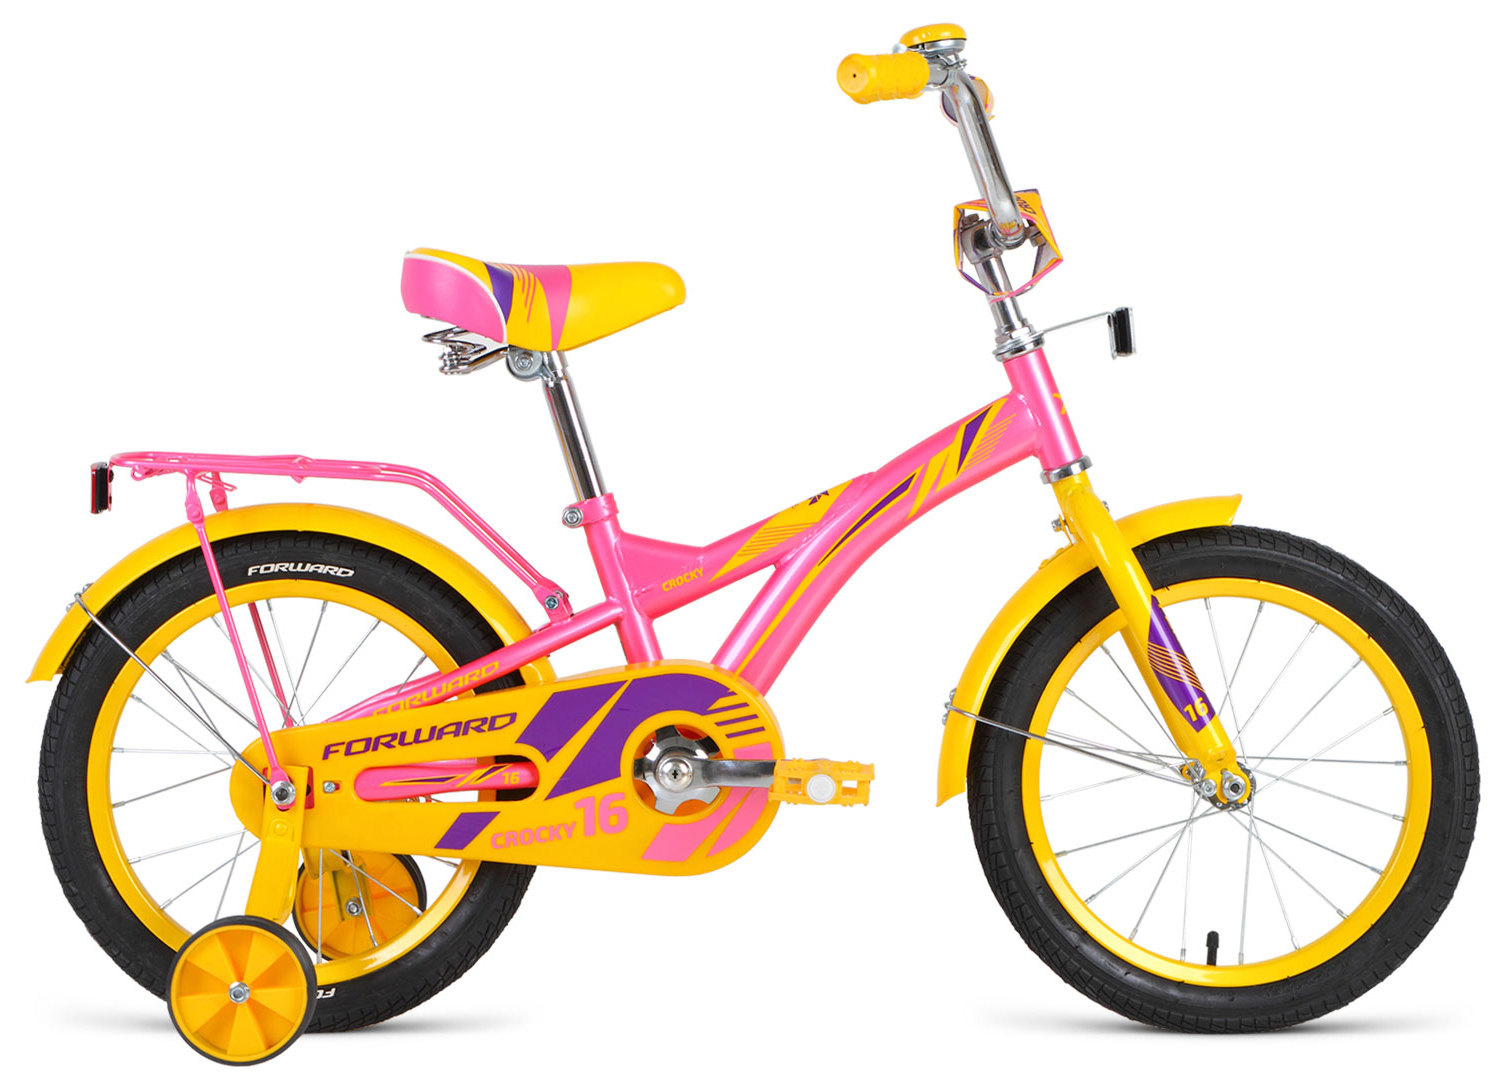  Велосипед трехколесный детский велосипед Forward Crocky 16 2019